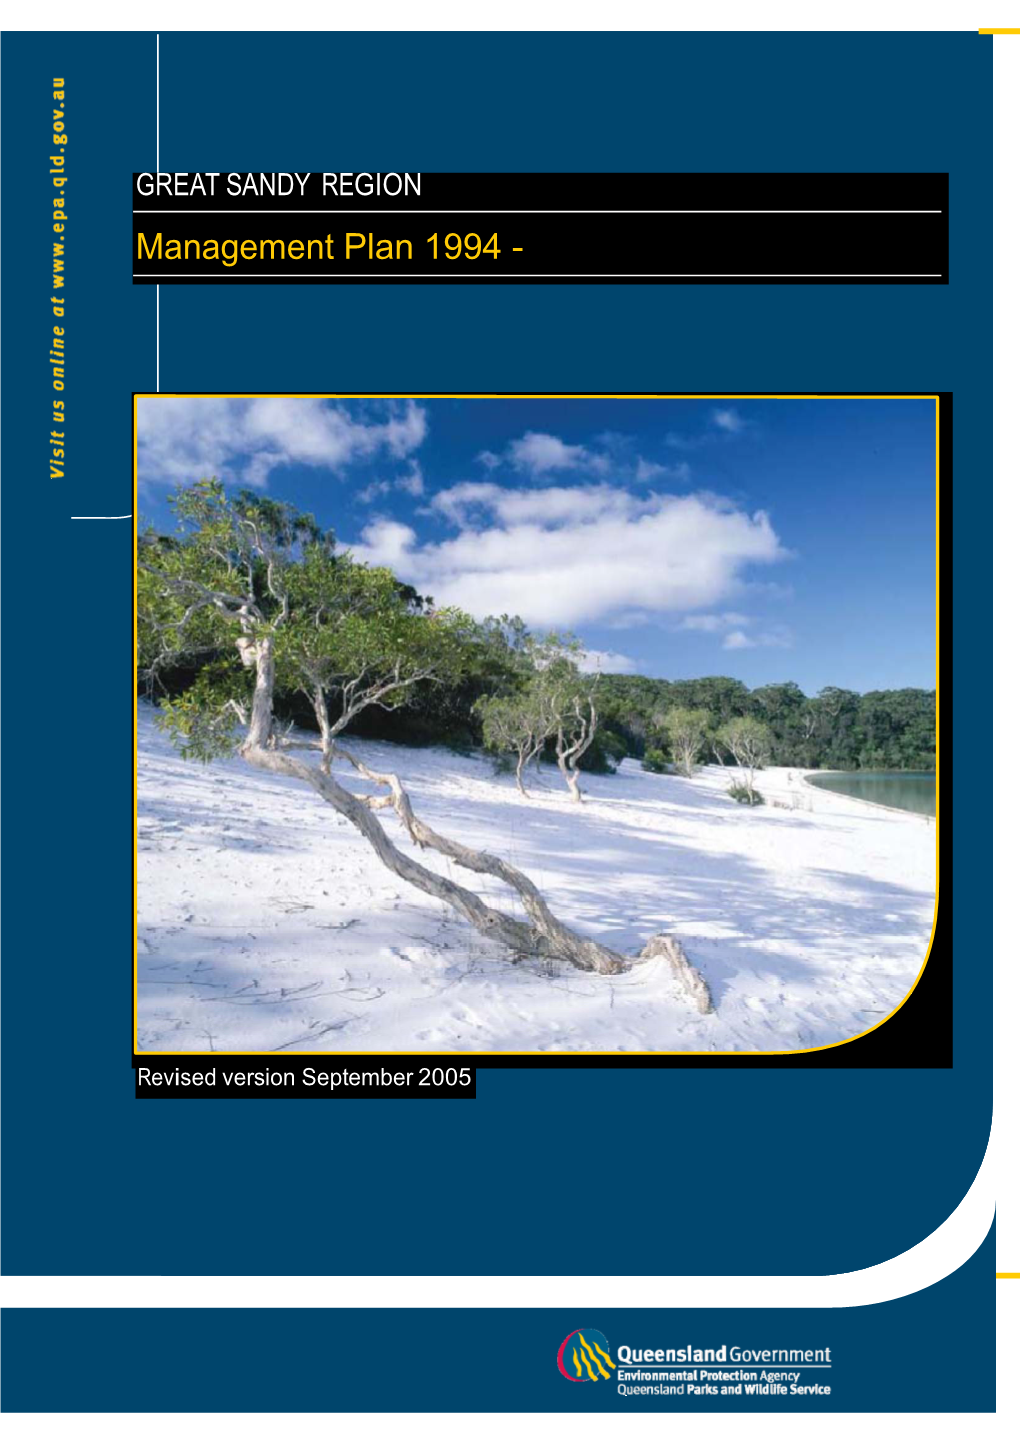 Great Sandy Region Management Plan 1994